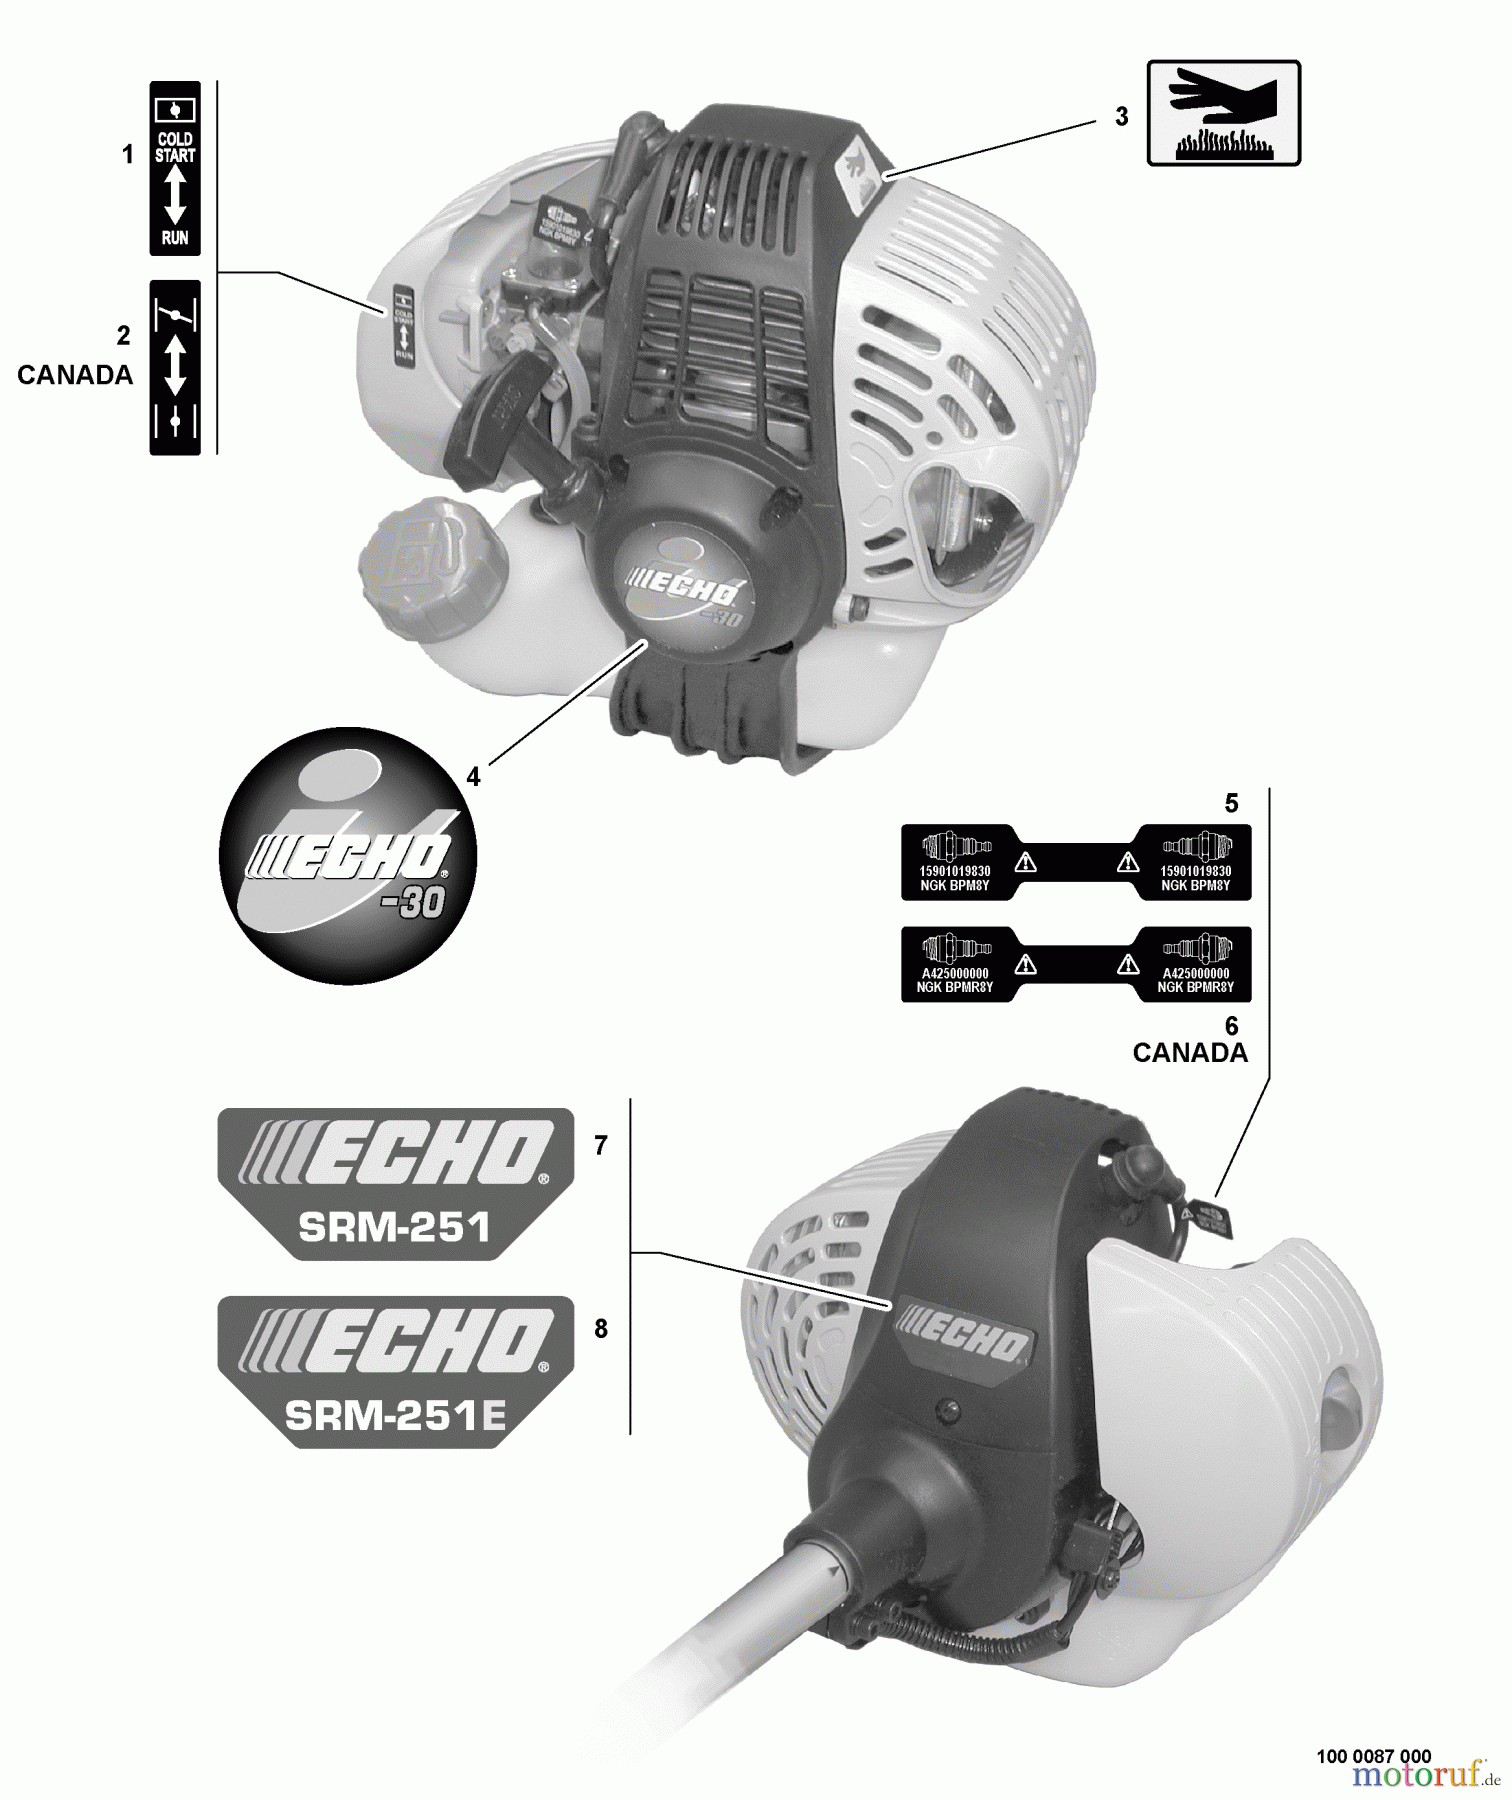  Echo Trimmer, Faden / Bürste SRM-251E - Echo String Trimmer, S/N:10001001 - 10999999 Labels